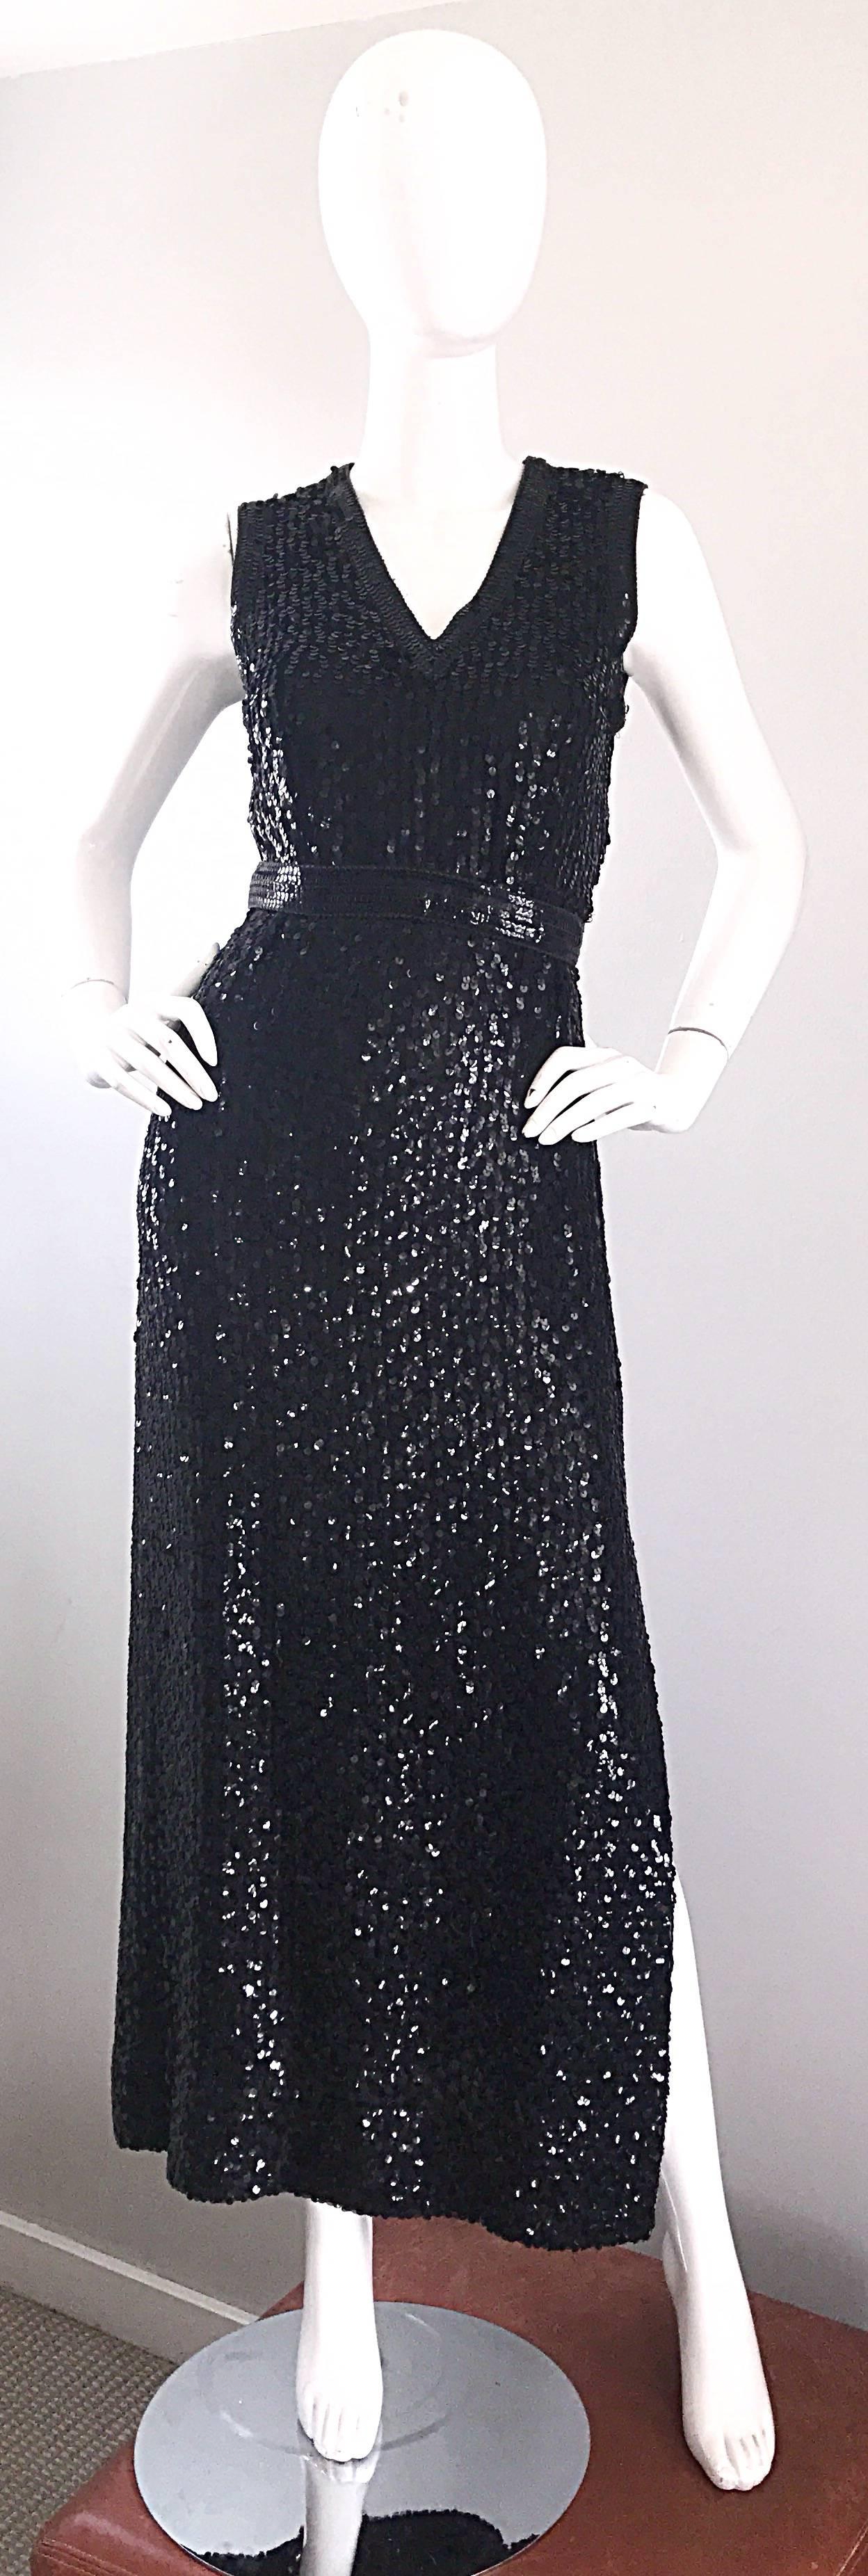 Magnifique robe vintage des années 70 LILLIE RUBIN en soie noire entièrement pailletée et sans manches ! La robe est ornée de milliers de paillettes cousues à la main. La ceinture attachée se ferme à la taille centrale arrière. La fente sur le côté